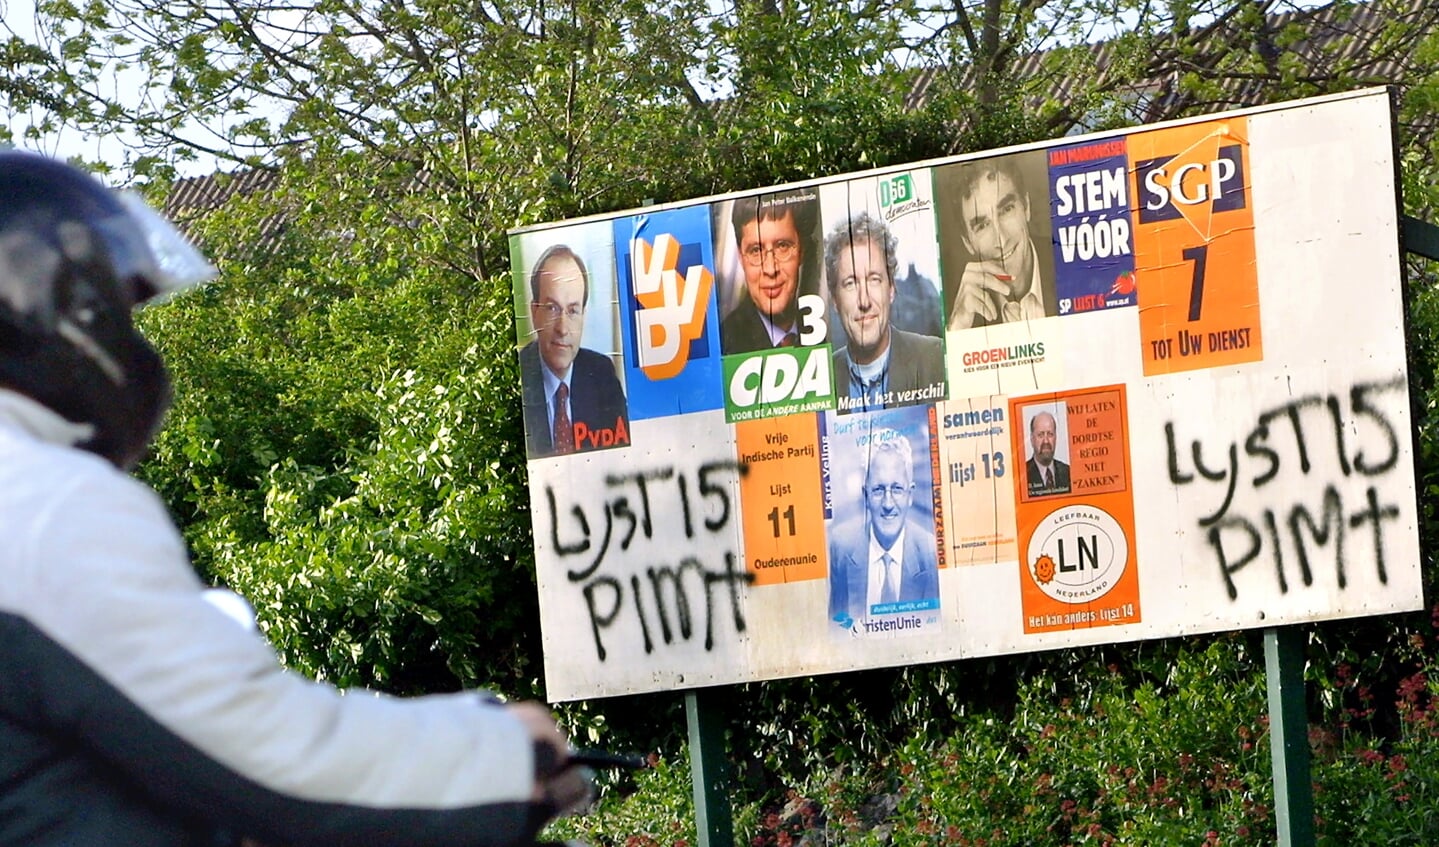 Vlak voor de Tweede Kamerverkiezingen in 2002 werd Pim Fortuyn op 6 mei 2002 vermoord, de lijsttrekker van de LPF, de Lijst Pim Fortuyn. Op dit bord ontbreekt de poster van de LPF, maar een aanhanger heeft met de verfspuit Lijst 15 Pim† twee keer op een lege plek gespoten. 